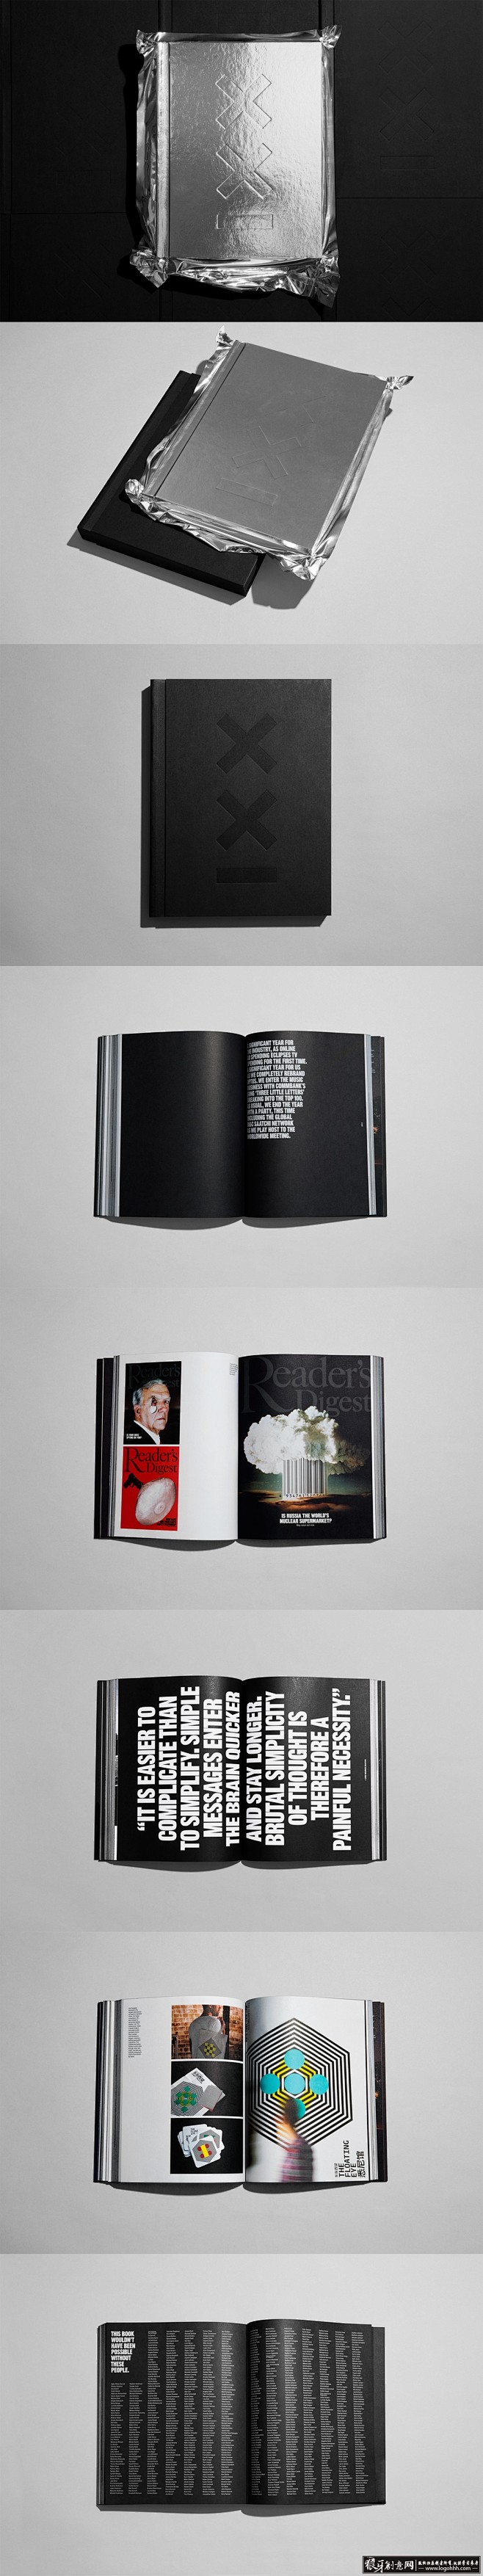 创意画册 高档书籍装帧设计 创意书籍封面...